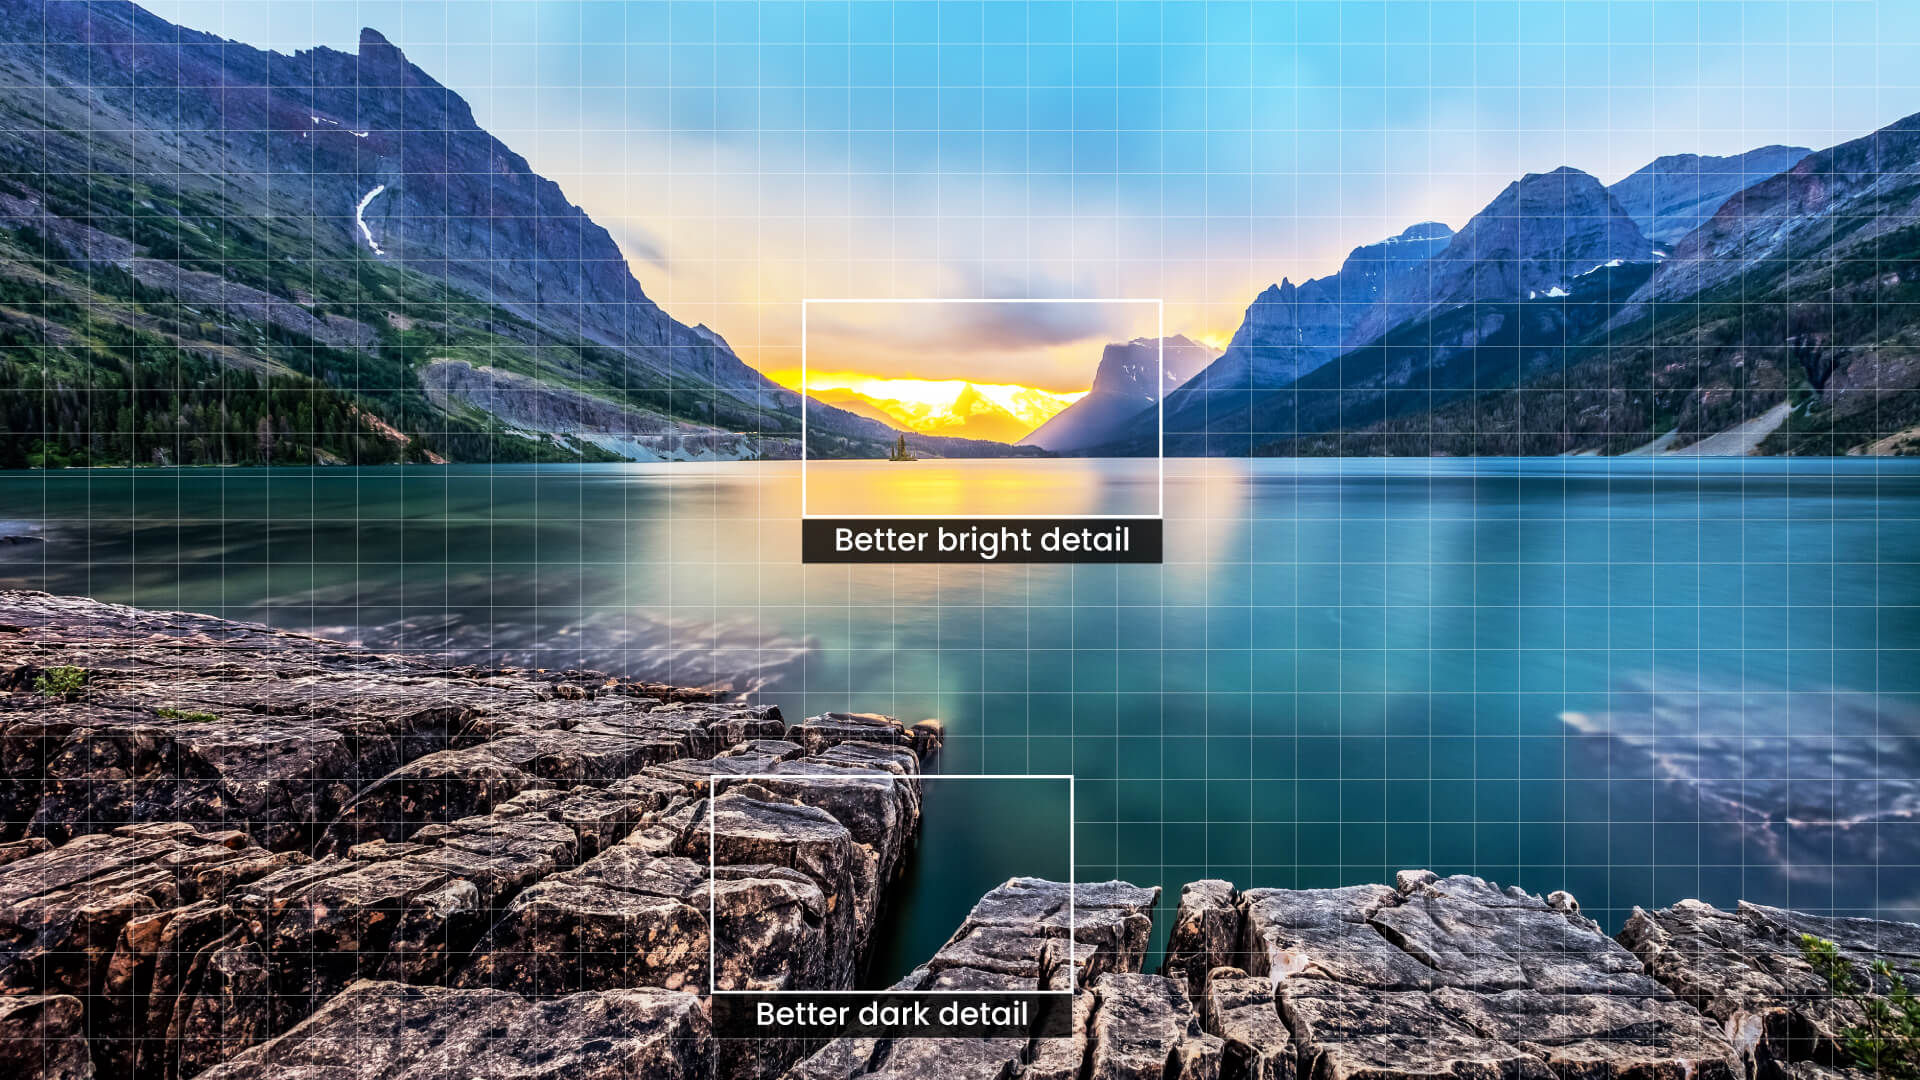 Įrenginio kontrasto stiprintuvas, kuris padalija vaizdą į daugiau nei 1000 zonų, taip pat analizuoja kiekvieno segmento ryškumą ir nepriklausomai reguliuoja spalvų gamą, kad būtų geriau matomos tiek tamsios, tiek šviesios detalės bei padidintas 4K vaizdo gylis. 